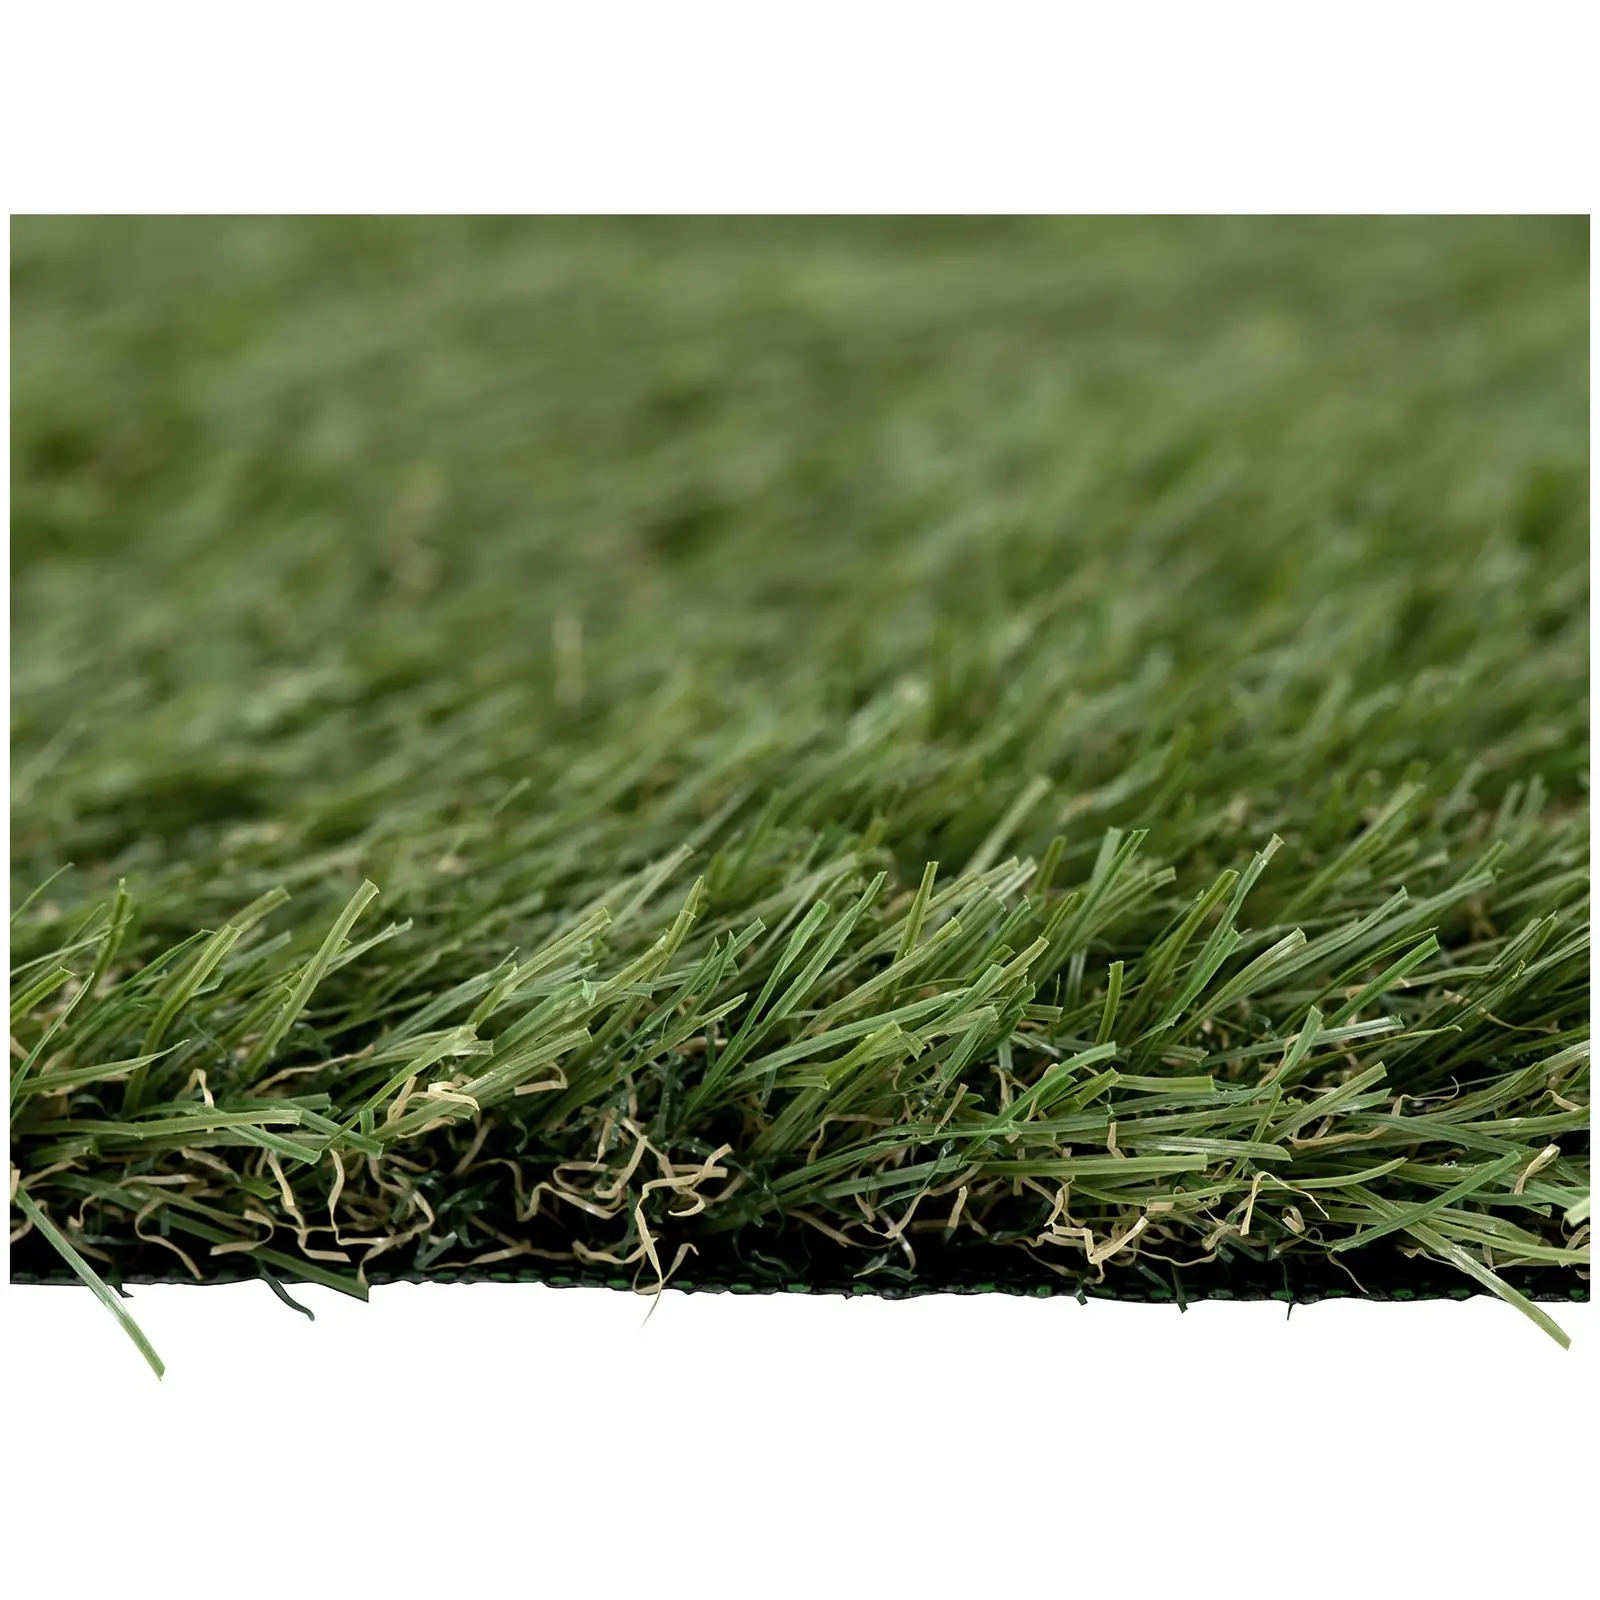 Sztuczna trawa - 2538 x 200 cm - wysokość: 30 mm - szybkość ściegu: 14/10 cm - odporność na promieniowanie UV